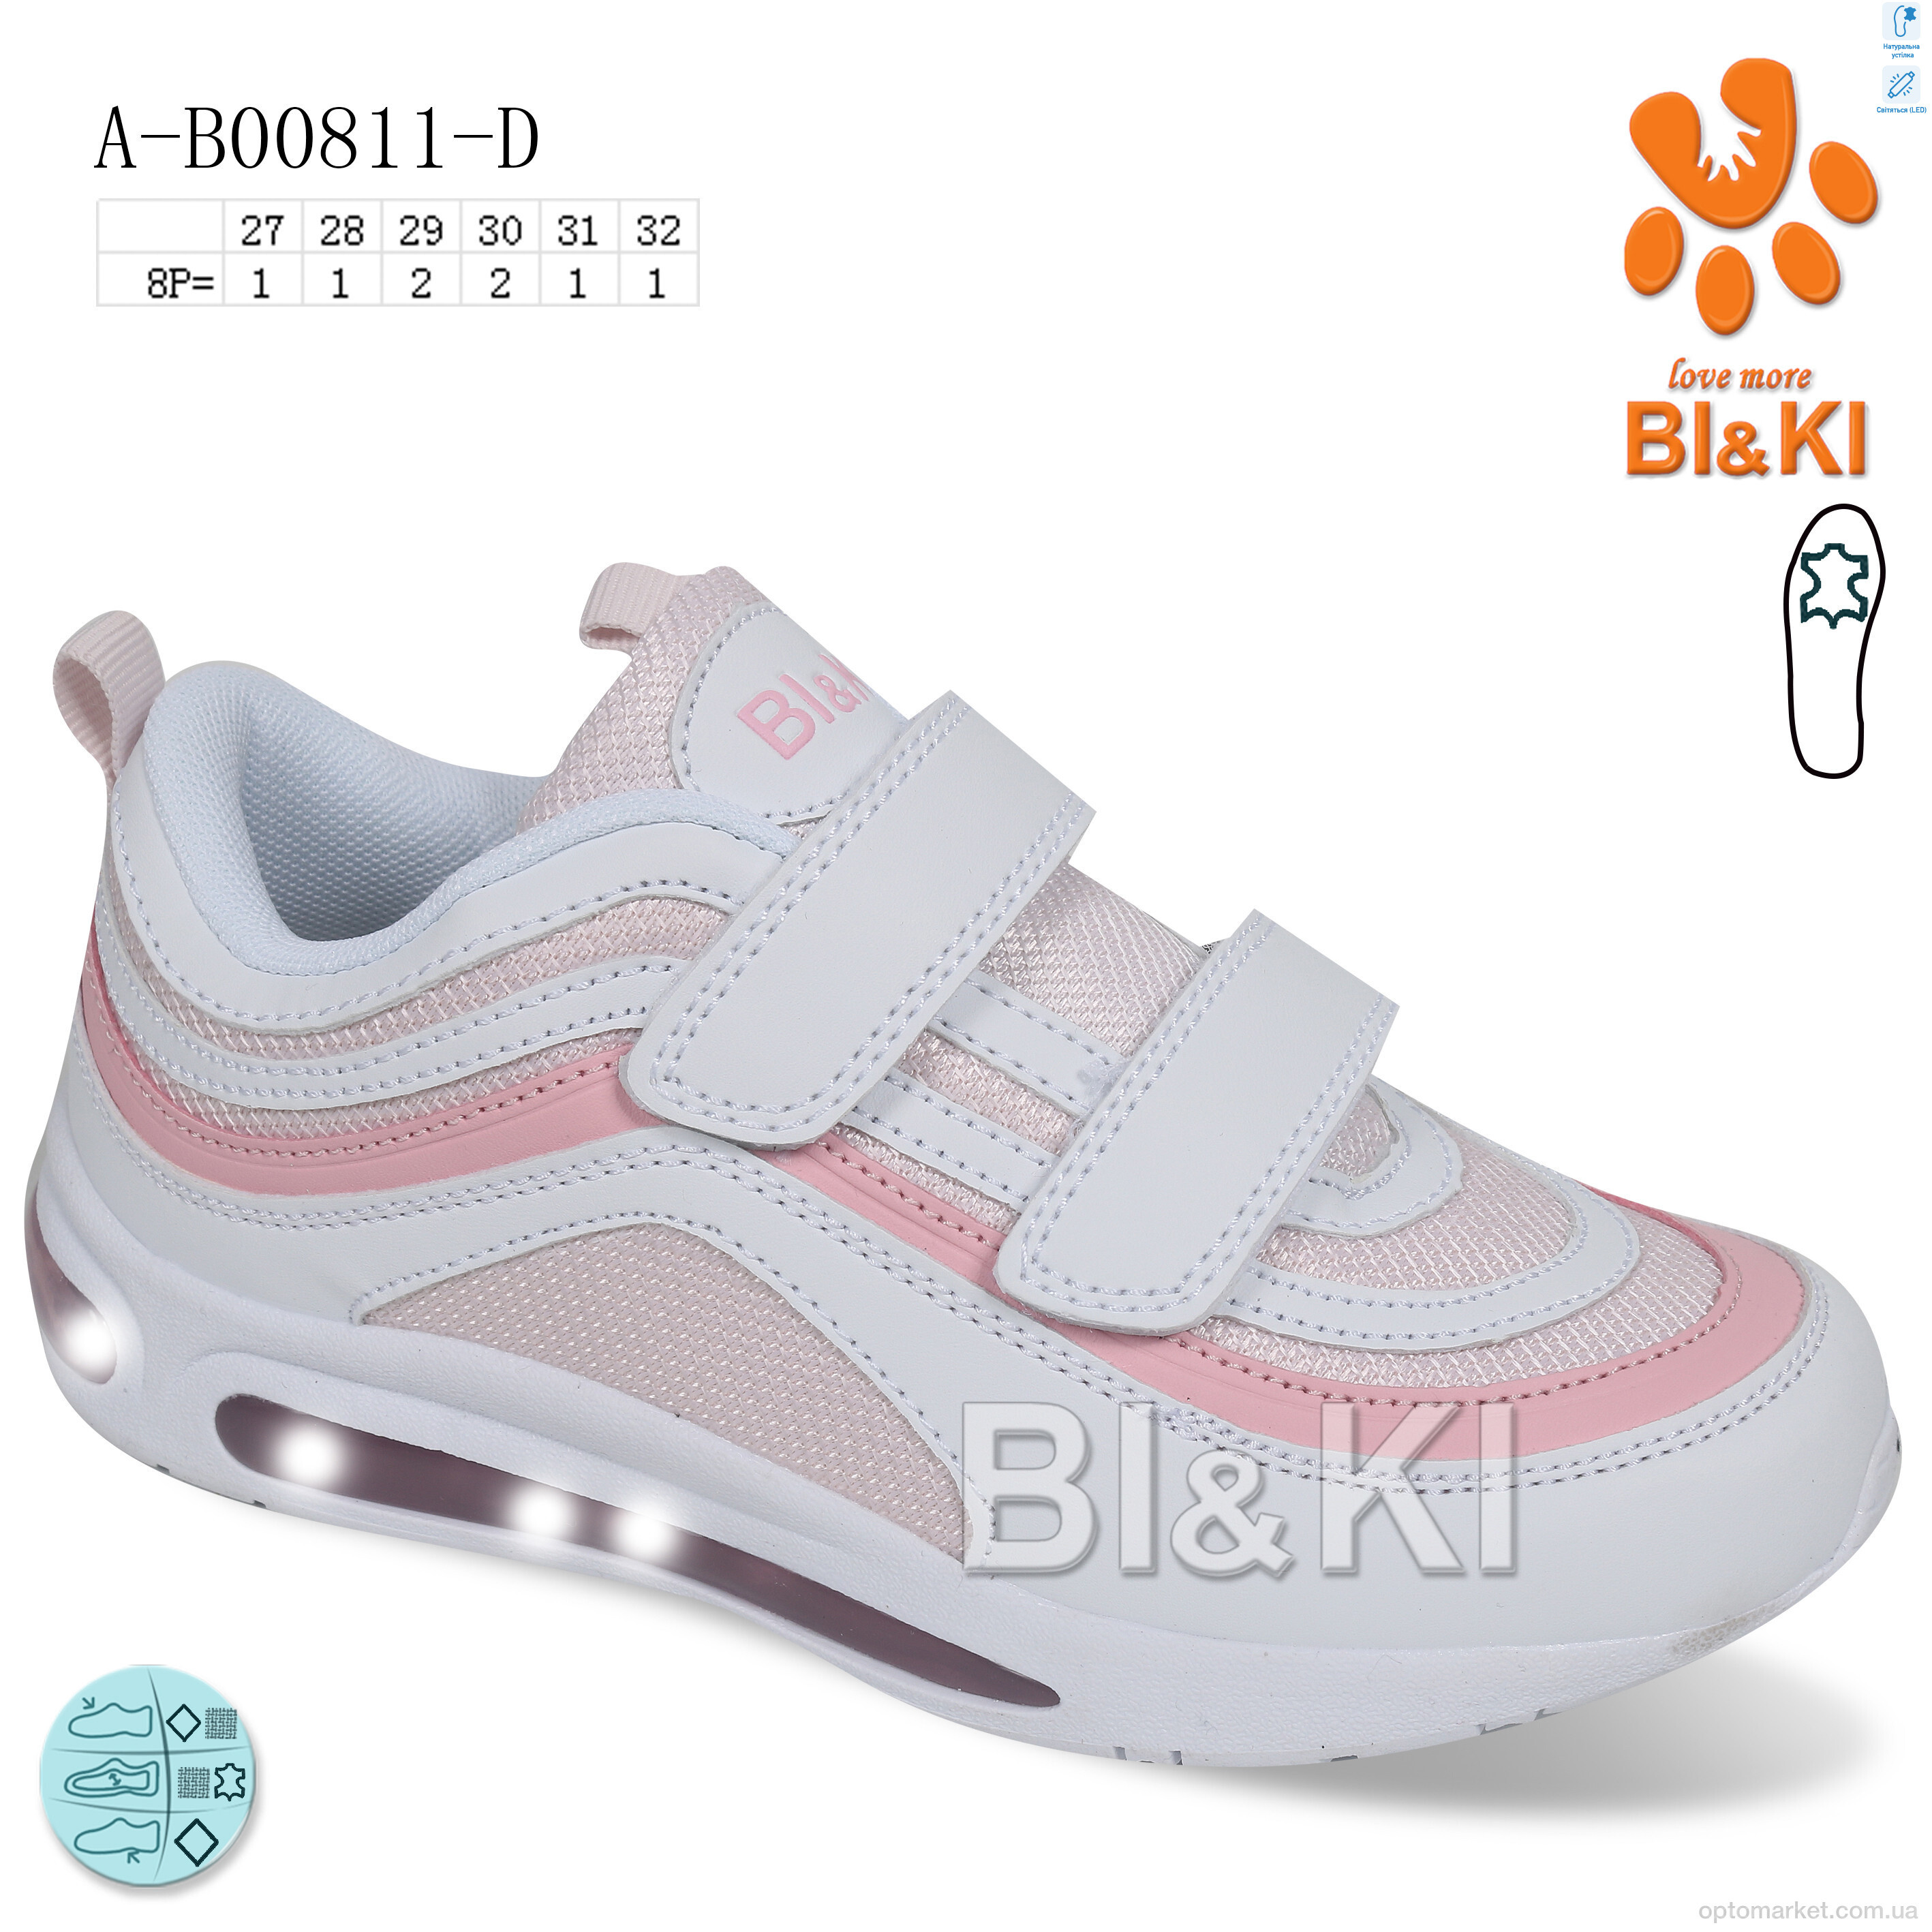 Купить Кросівки дитячі AB00811D LED BL&KL білий, фото 1